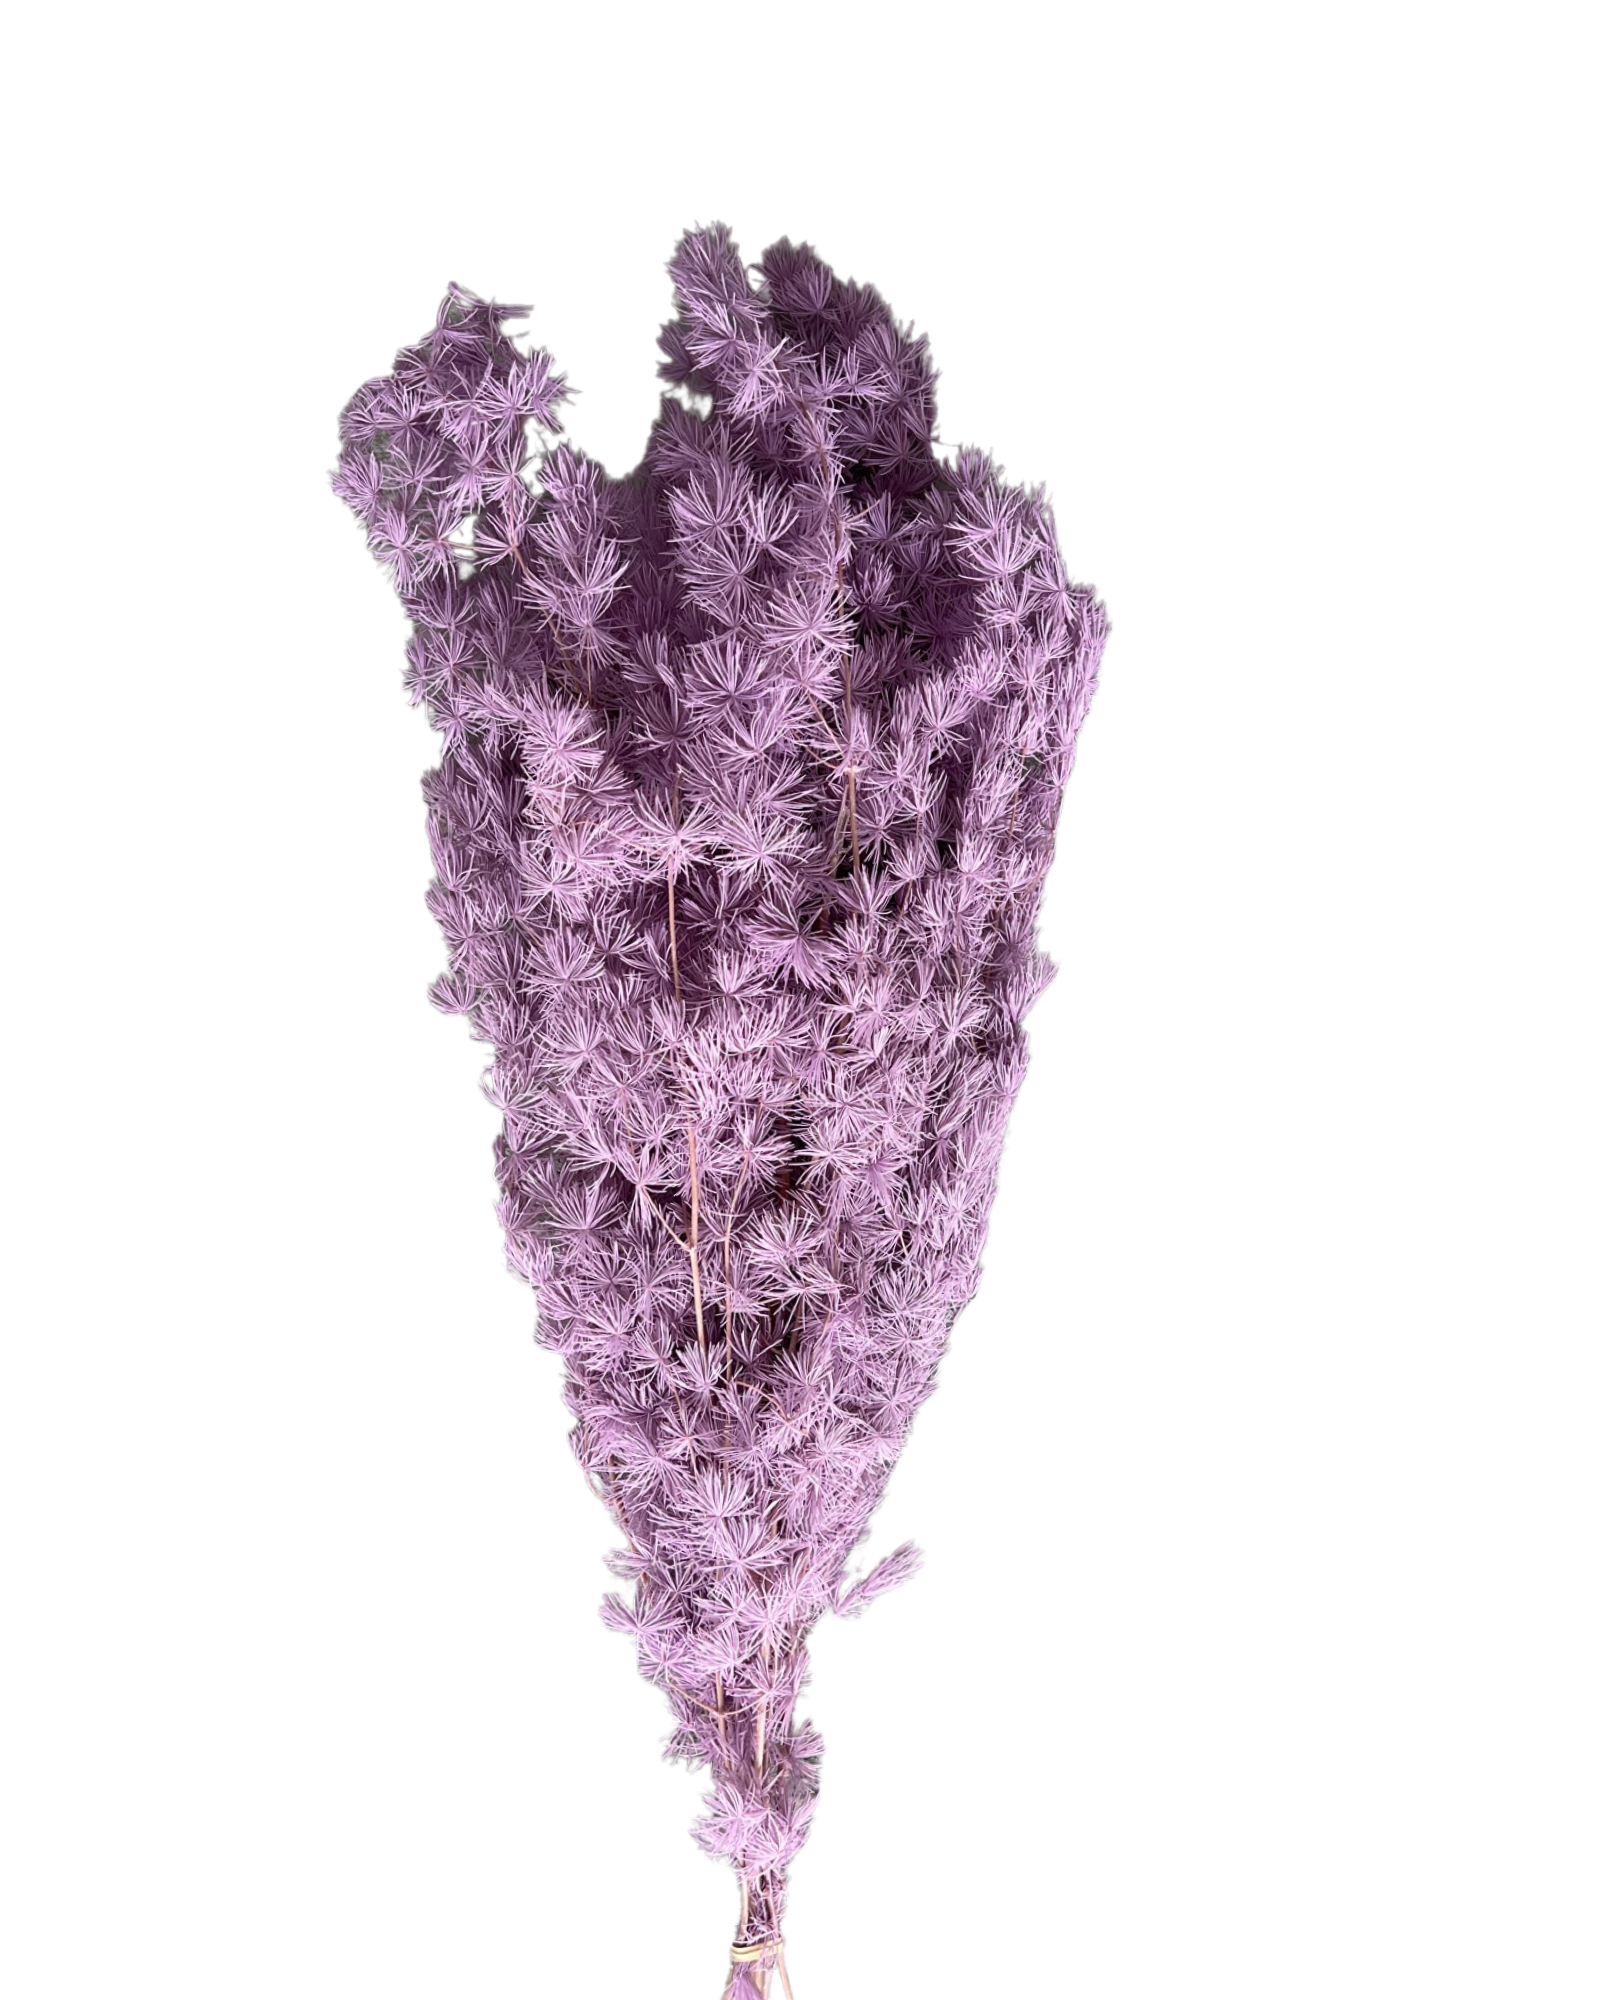 Ming fern(ASPARAGUS MYRIOCLADUS) - Purple